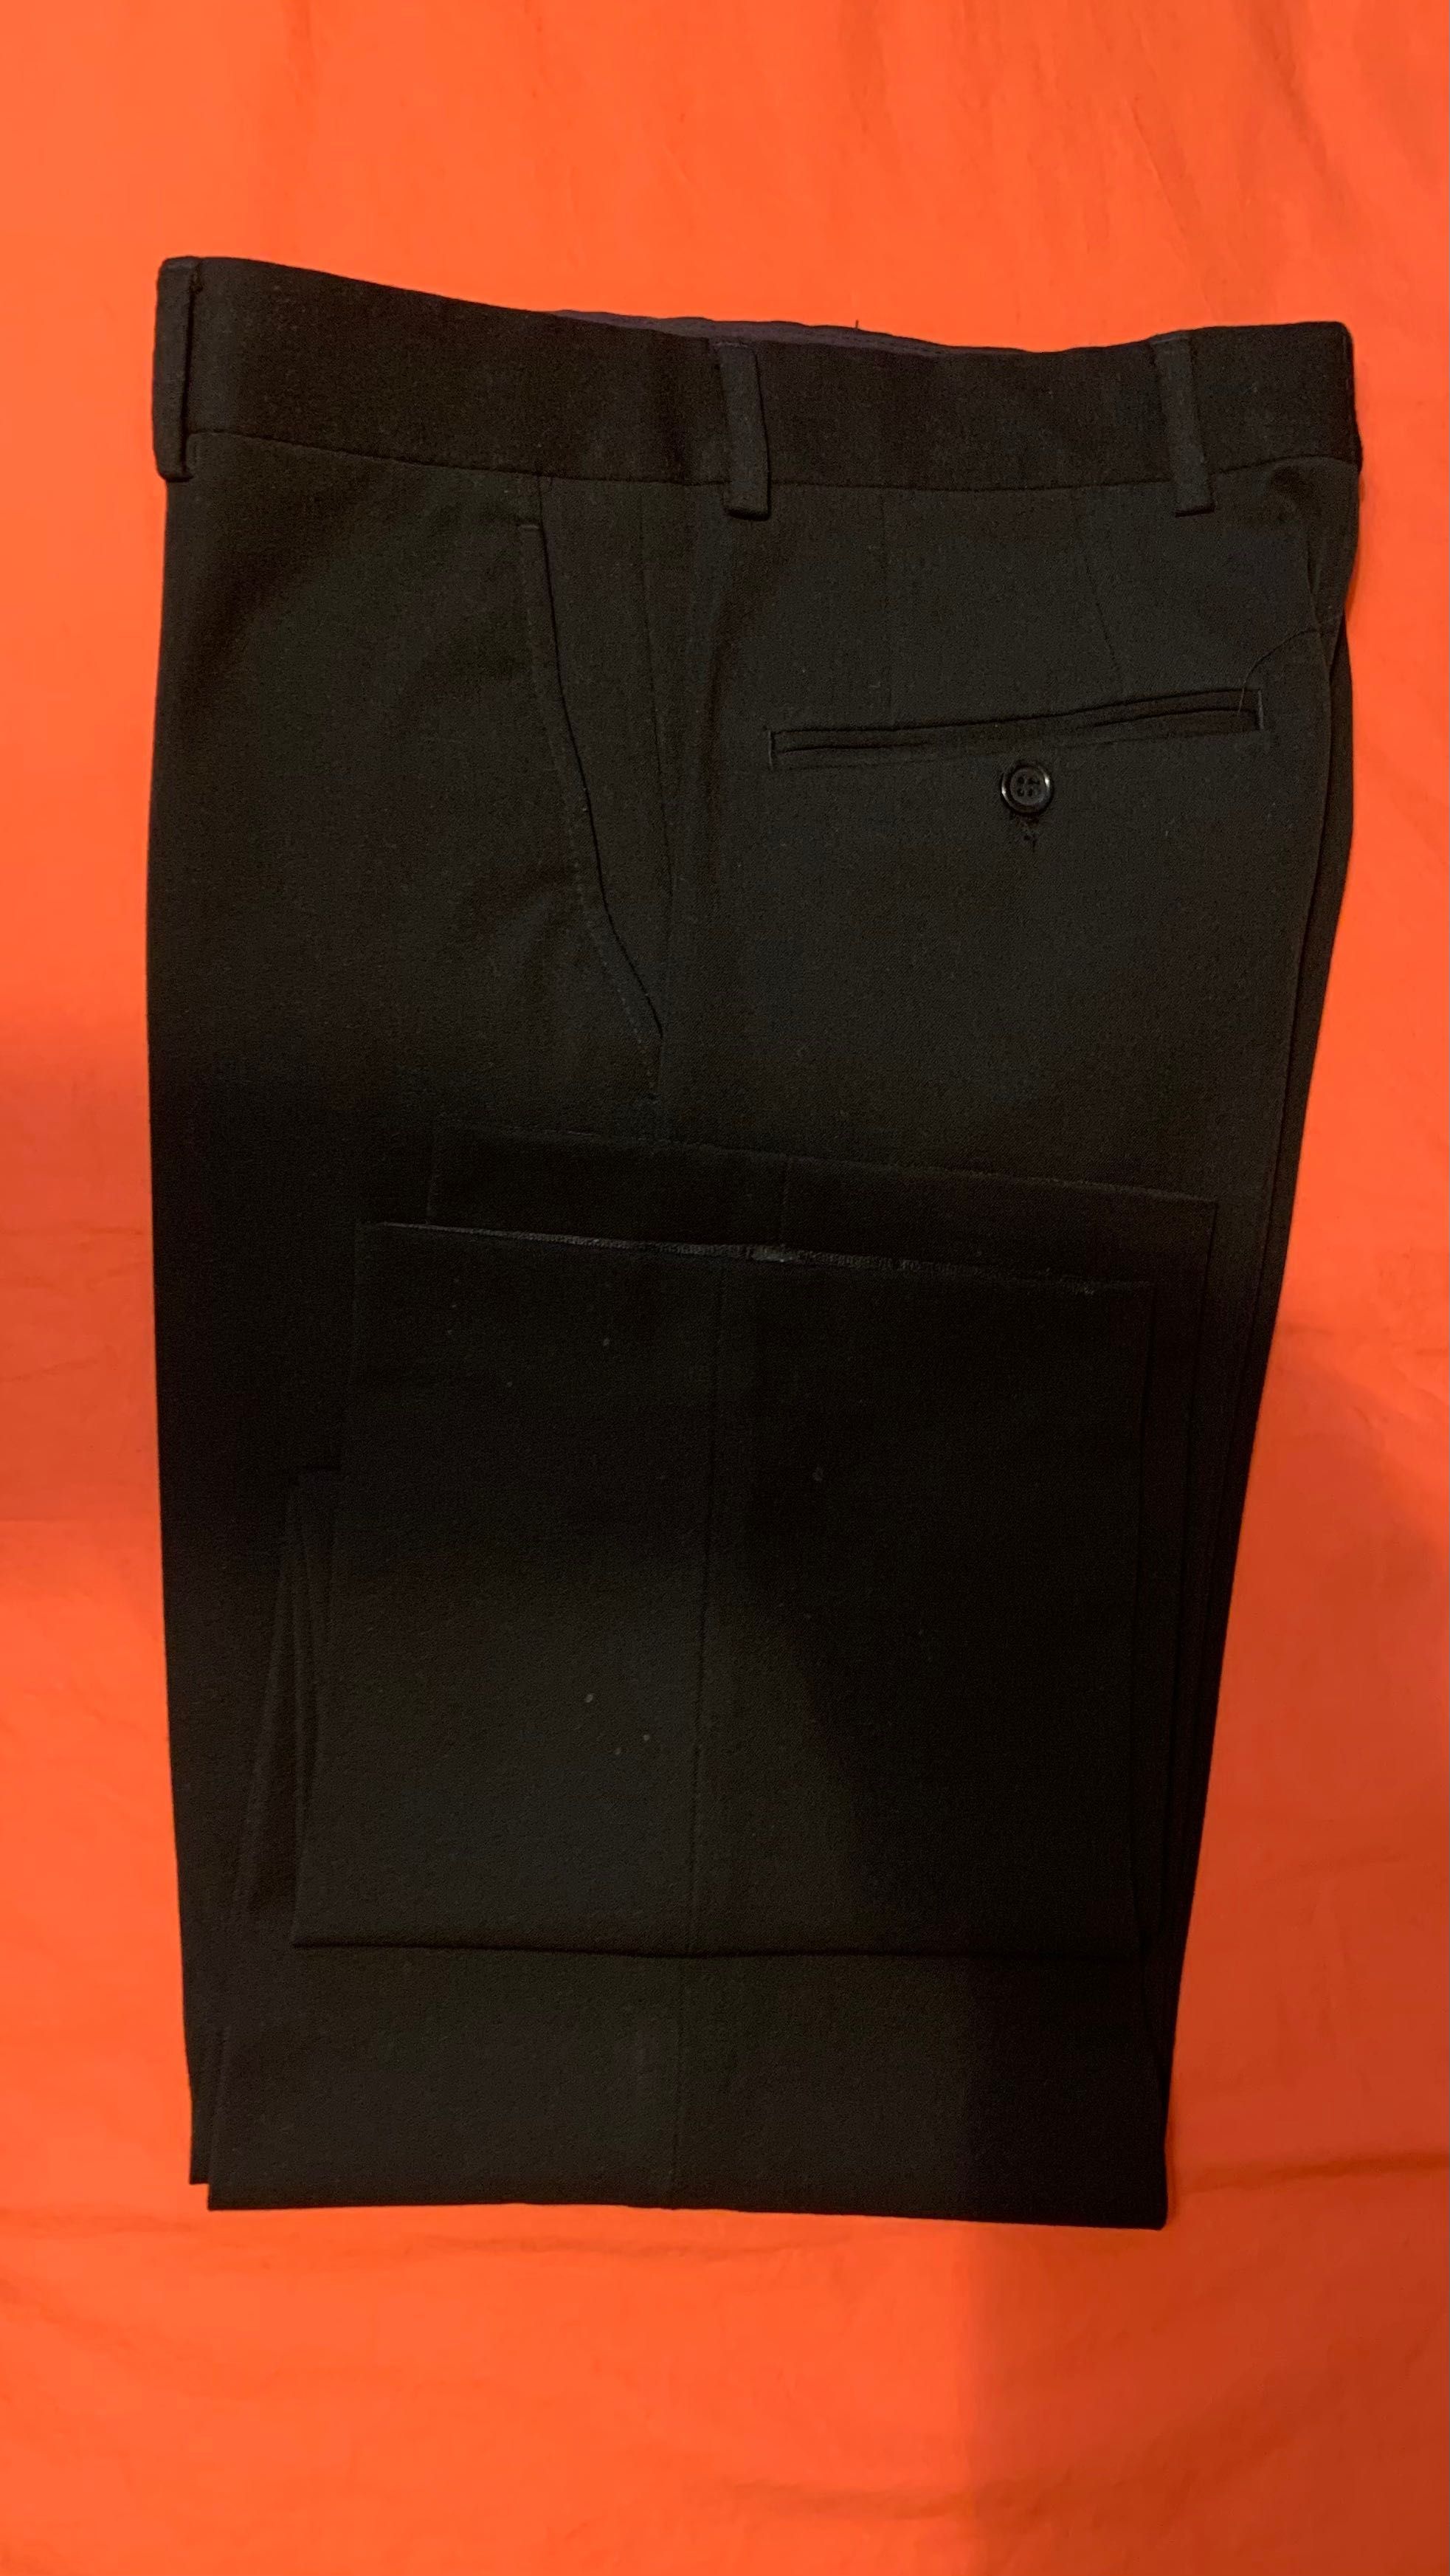 Spodnie męskie - DWIE PARY - PRÓCHNIK granatowe i ZARA czarne